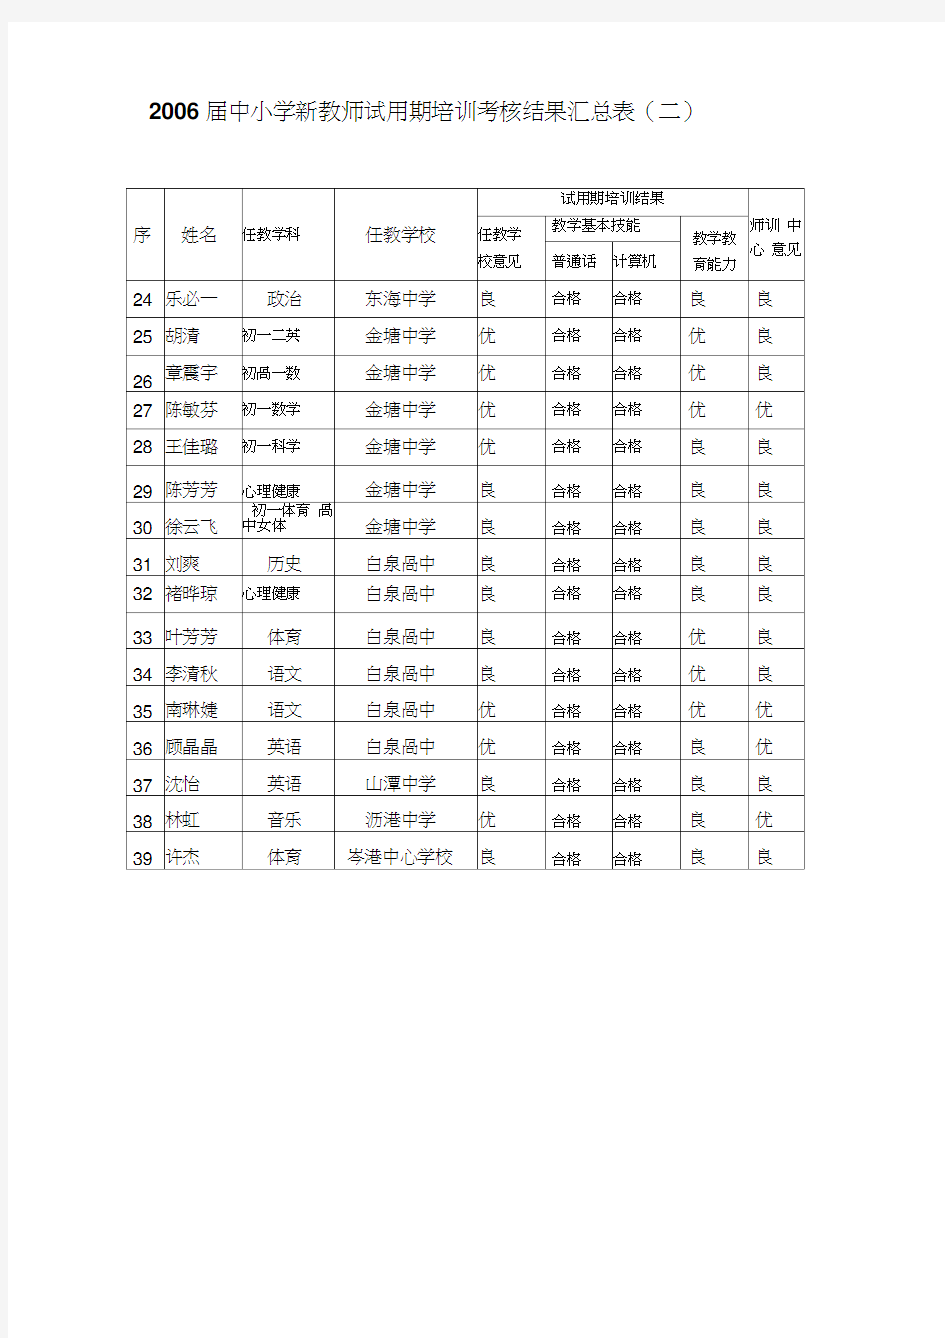 2006届中小学新教师试用期培训考核结果汇总表(一).